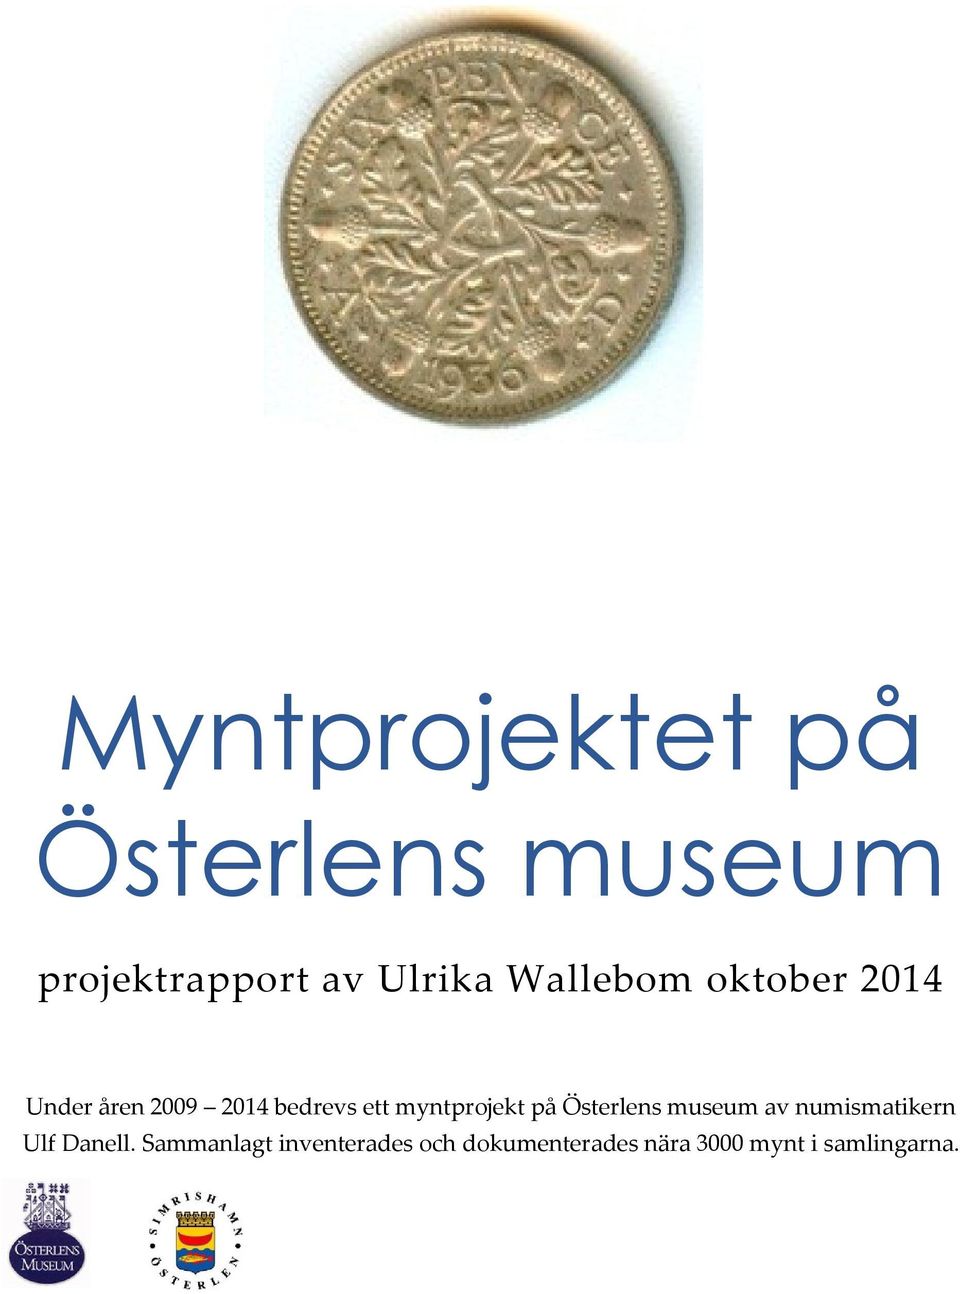 myntprojekt på Österlens museum av numismatikern Ulf Danell.